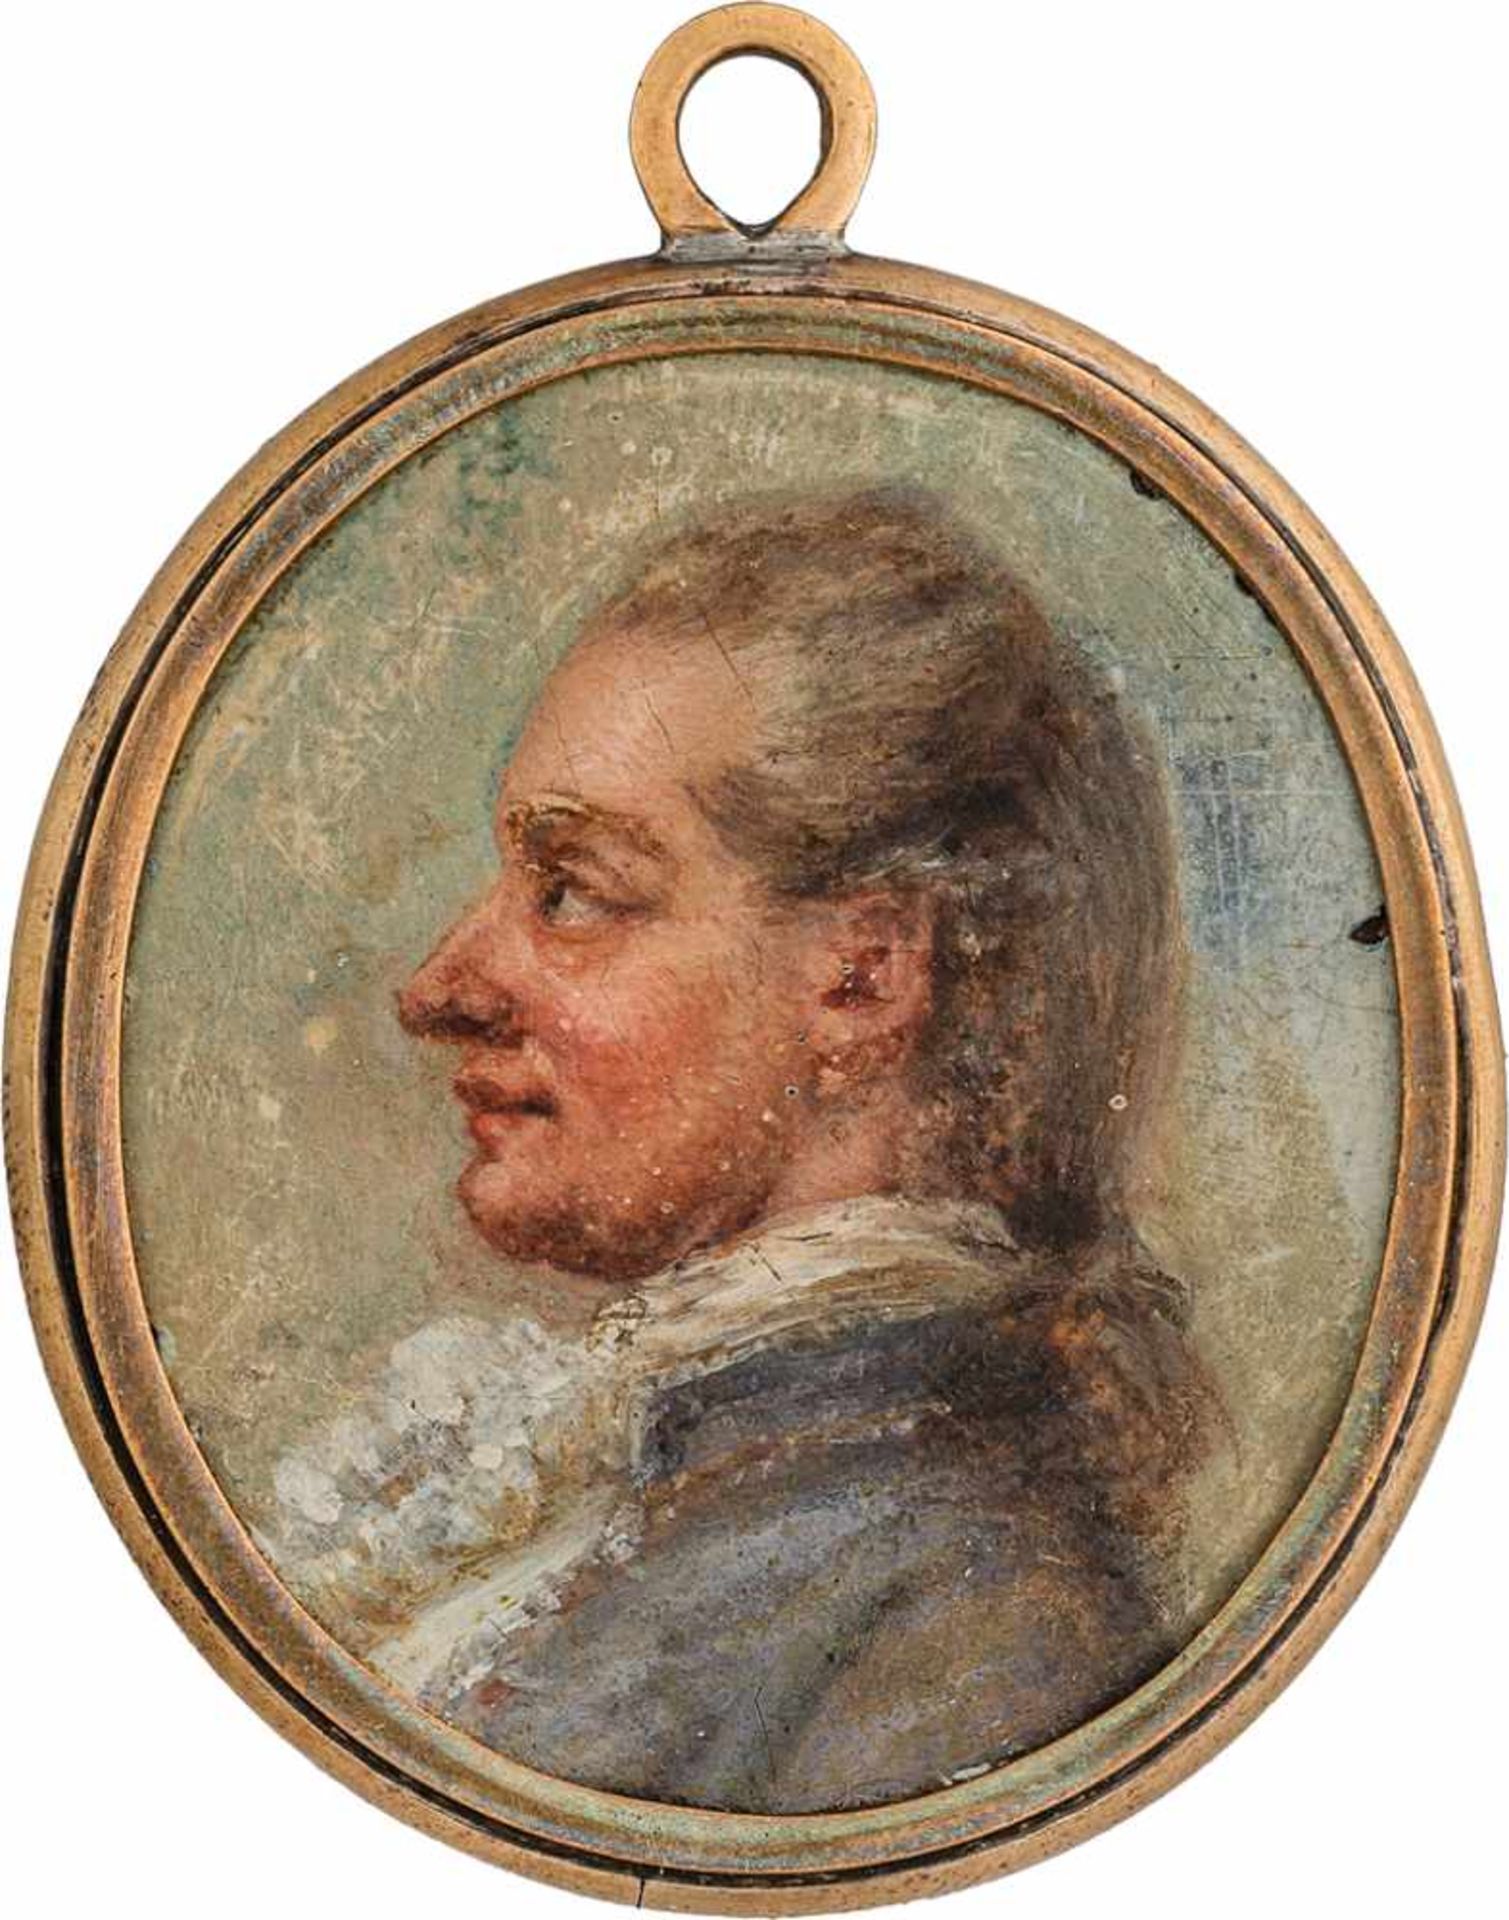 Deutsch: um 1770/1780. Miniatur Profil Portrait eines jungen Mannes in fliederfarbener Jacke, plu